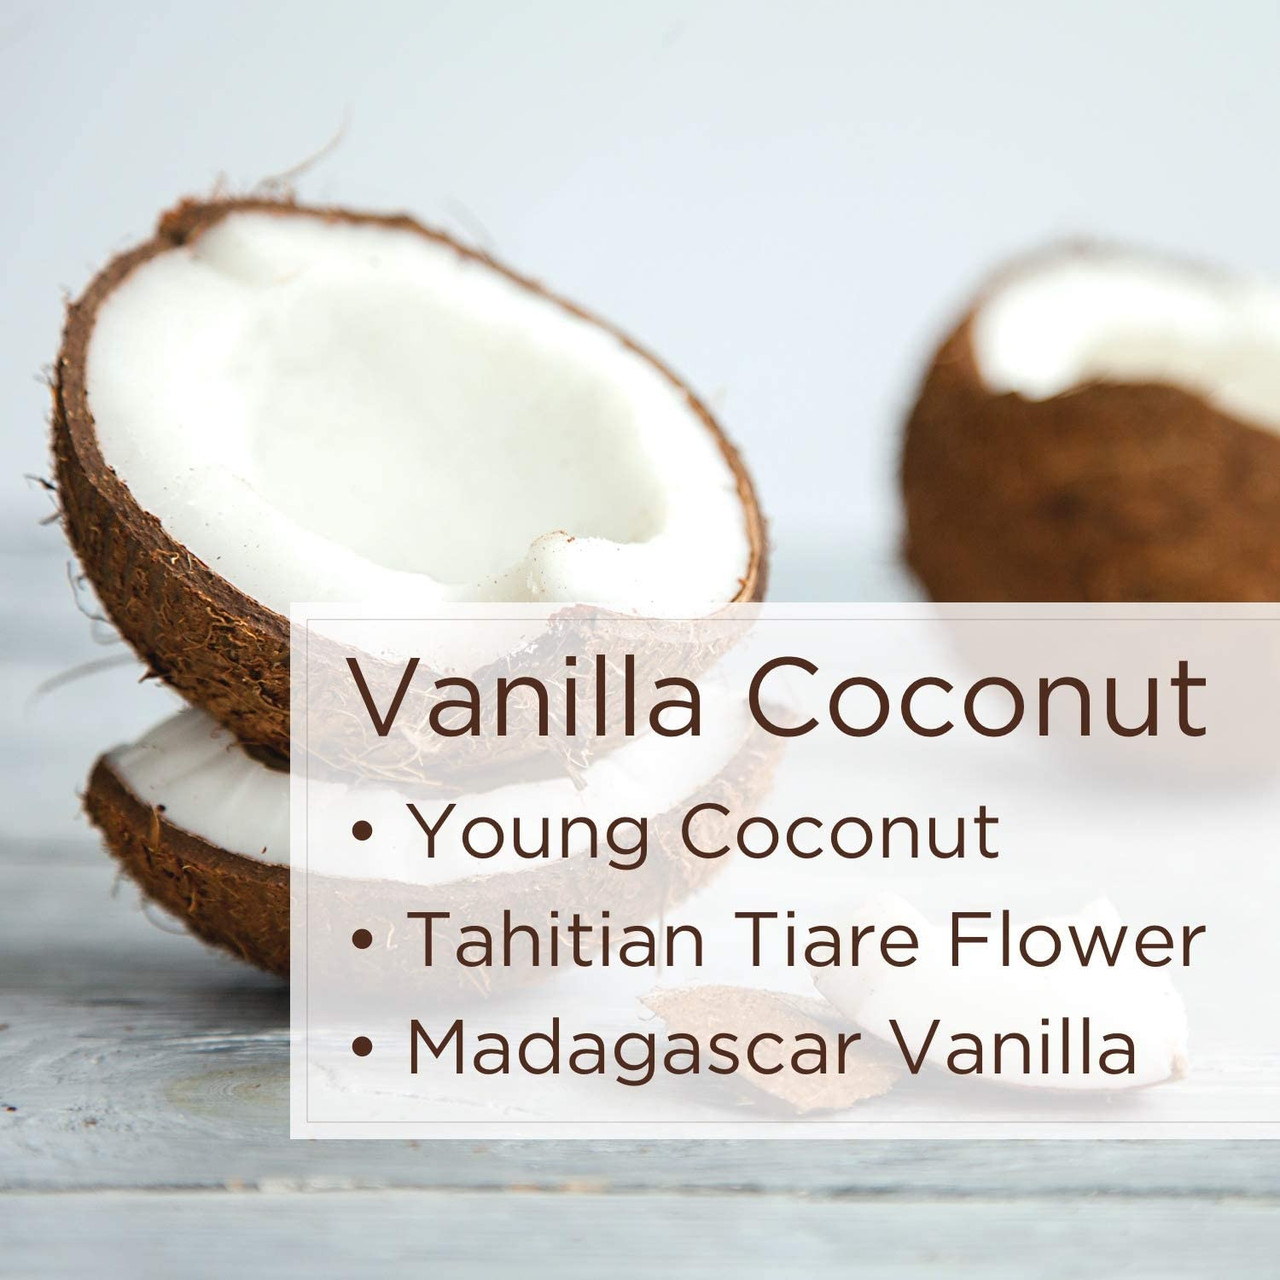 Vanilla Coconut Oil